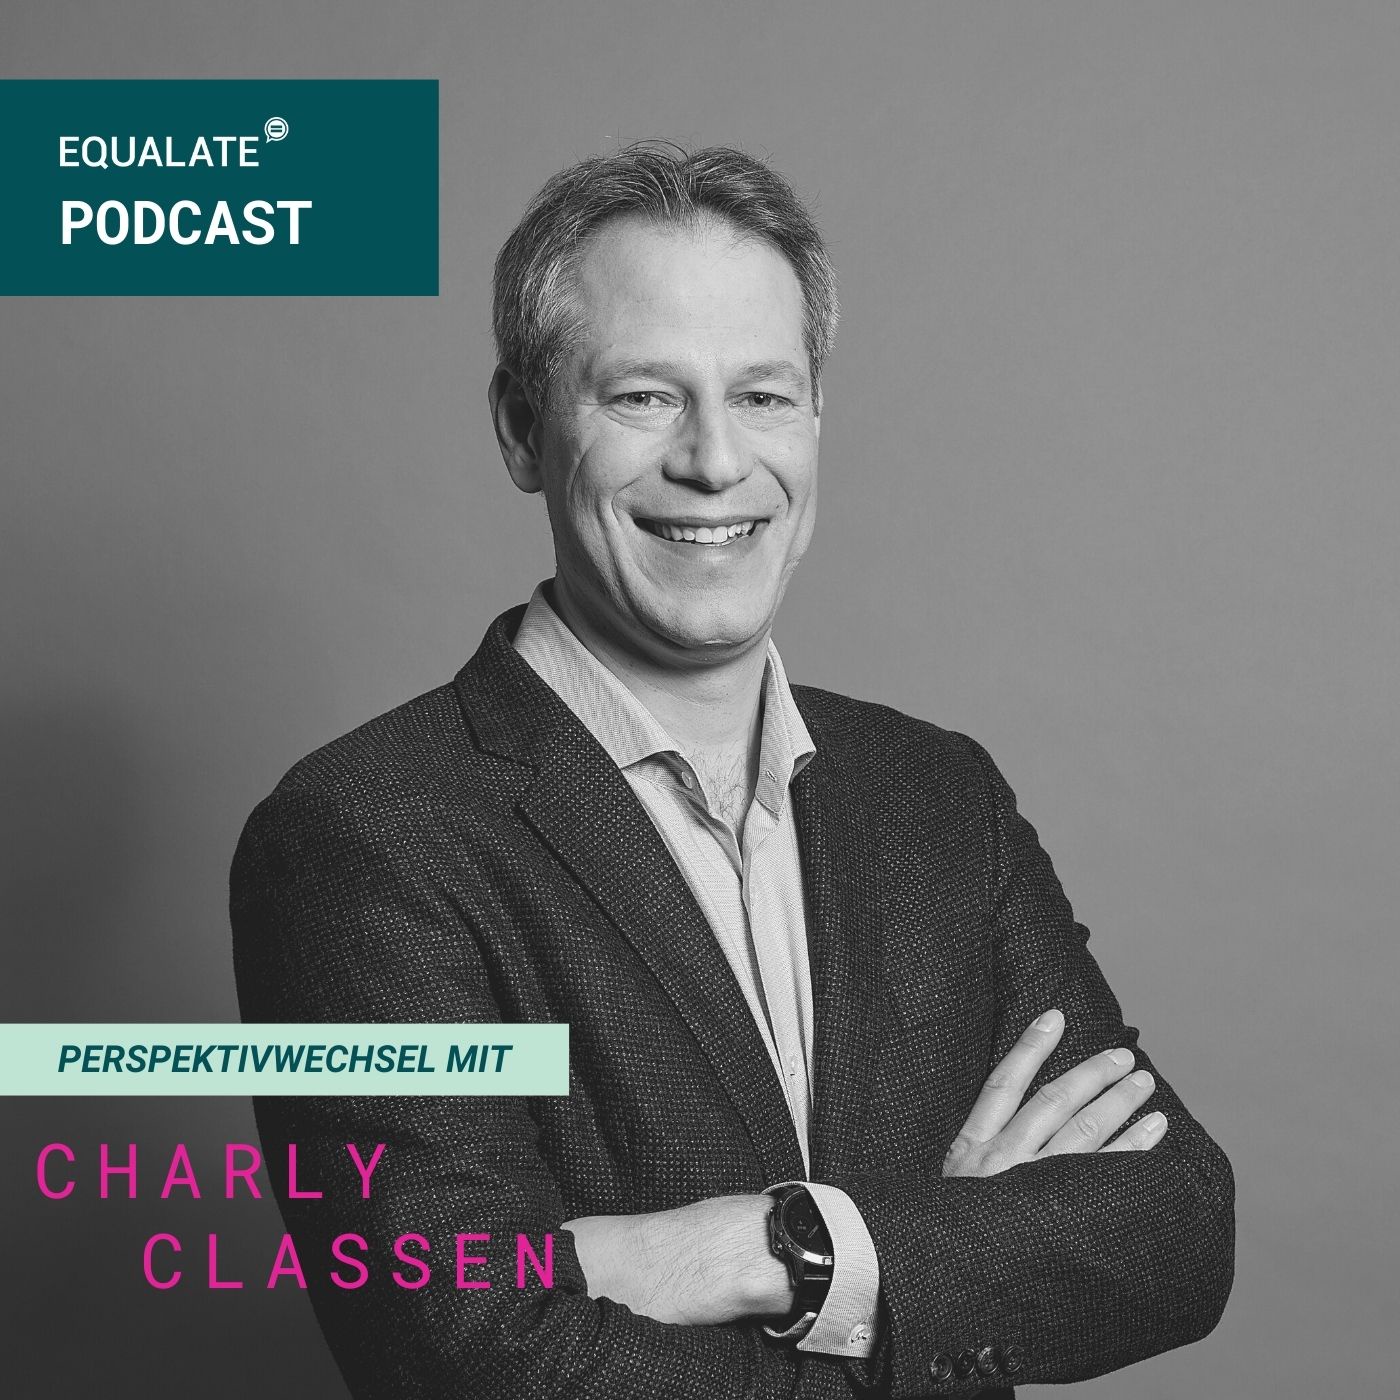 #48 Perspektivwechsel mit Charly Classen - Excecutive Vice President Sport bei Sky Deutschland